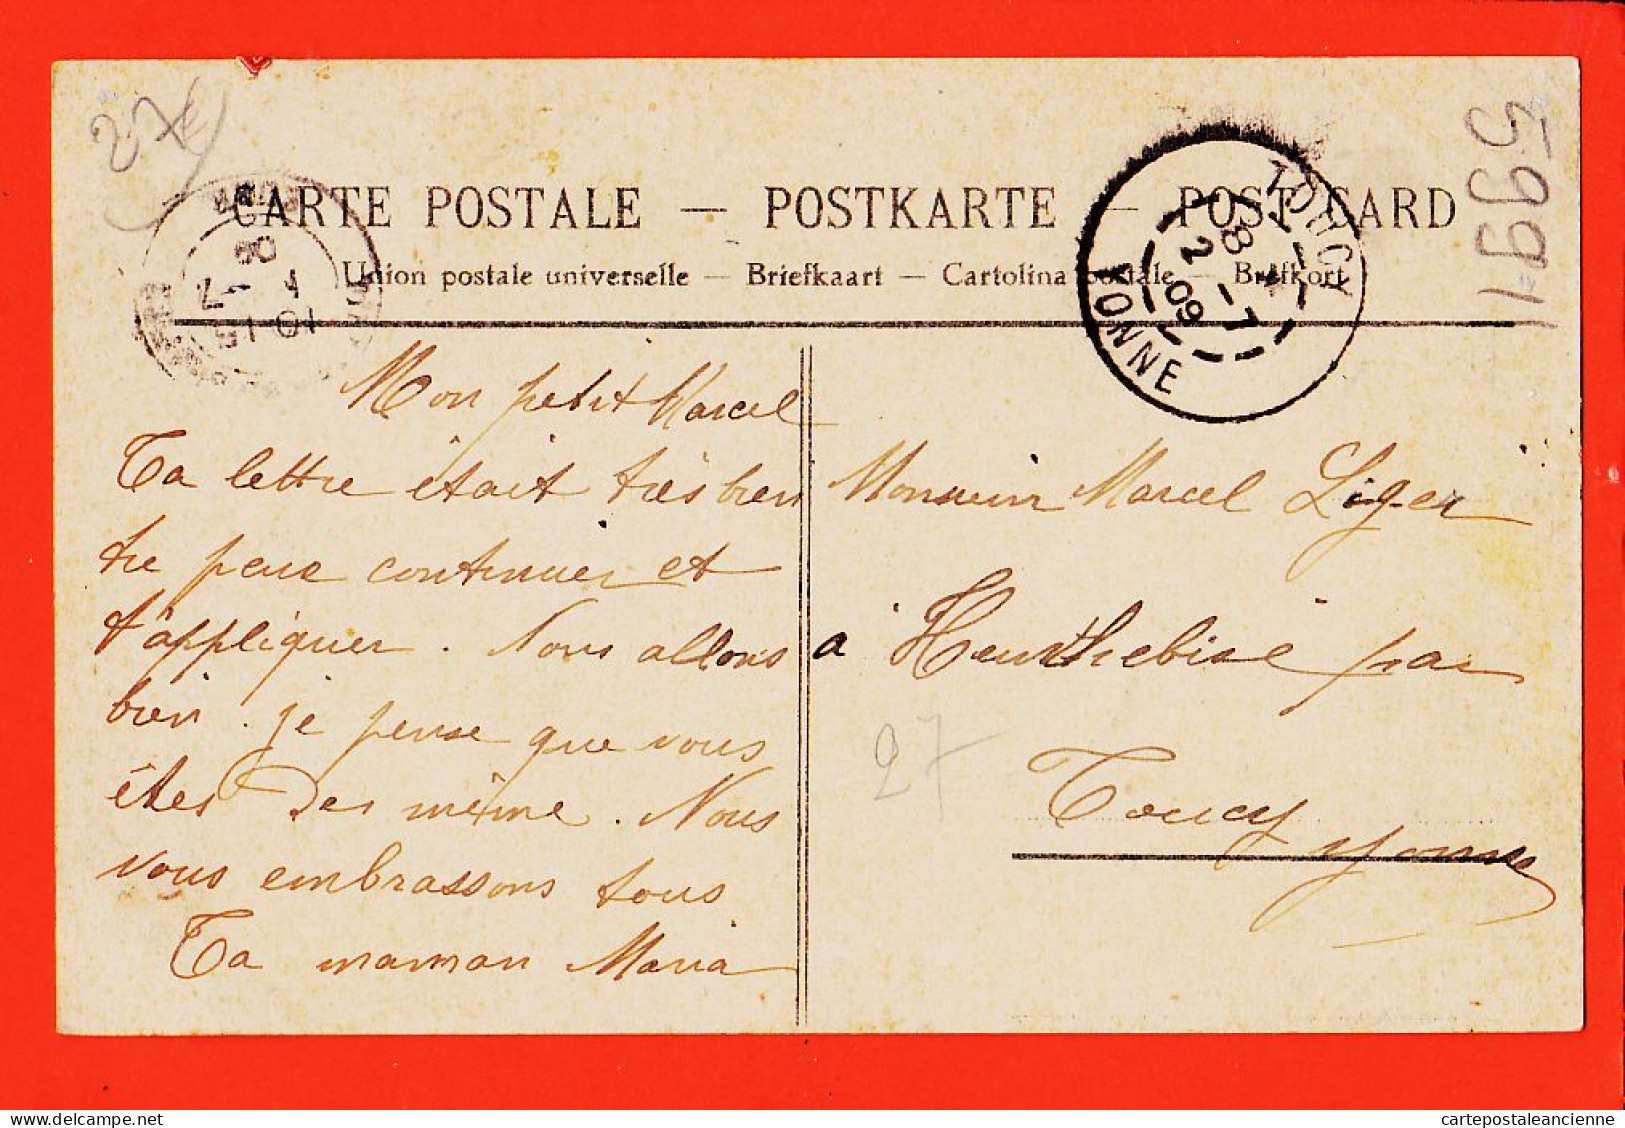 35953 / TILLIERES-AVRE  27-Eure Usine Cote VERNEUIL 1909 De Maria à Marcel LEGER Heurthebise Toucy-PAUTEL Journal - Tillières-sur-Avre